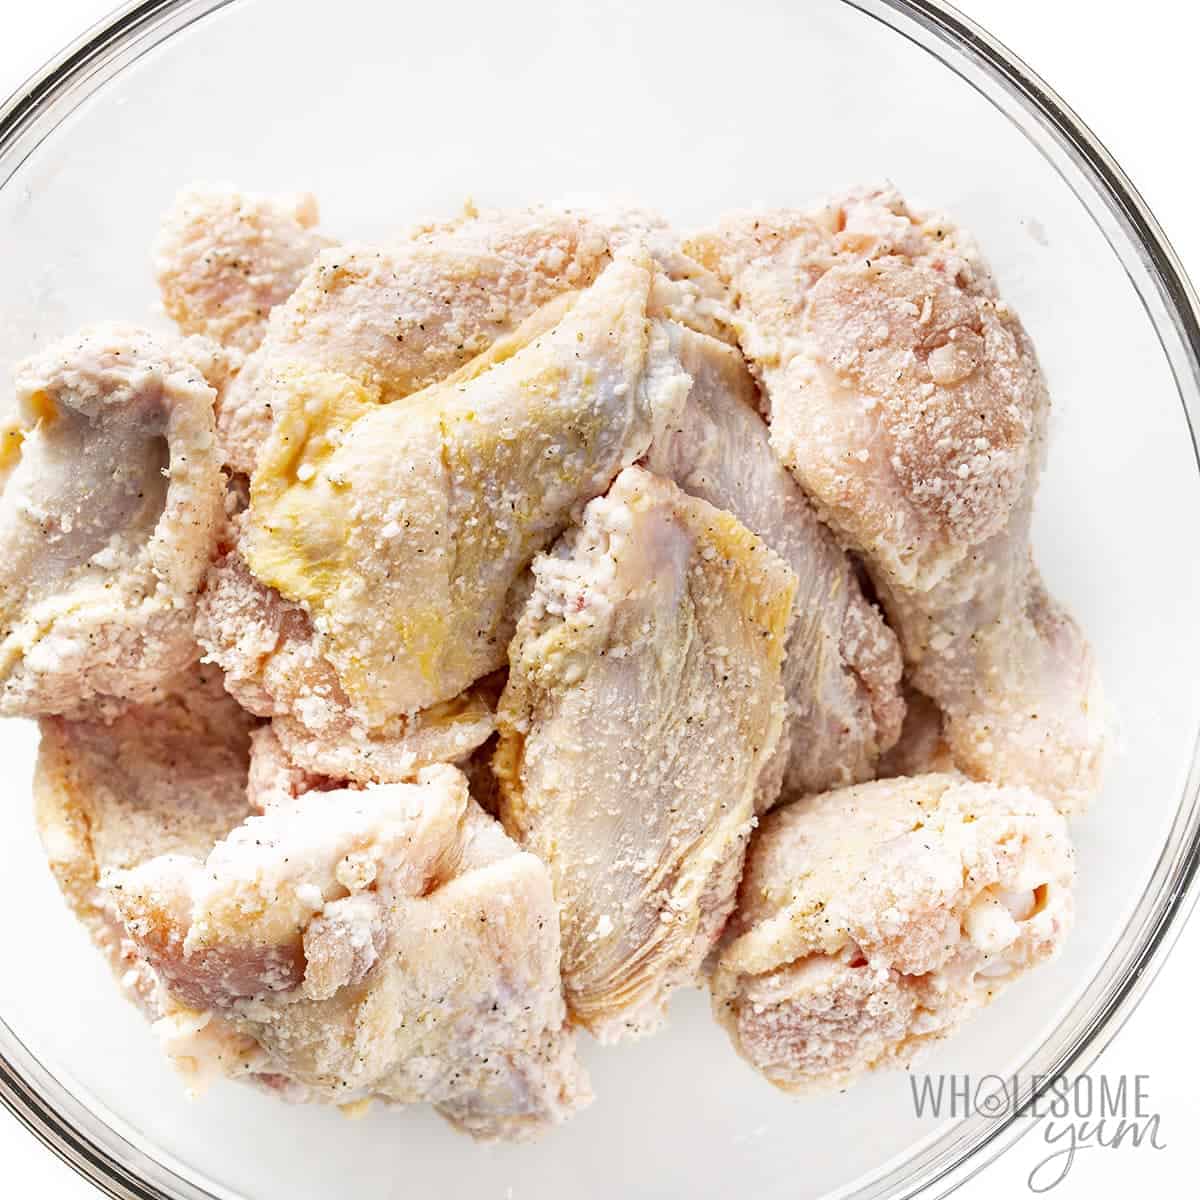 Seasoned chicken wings in a bowl